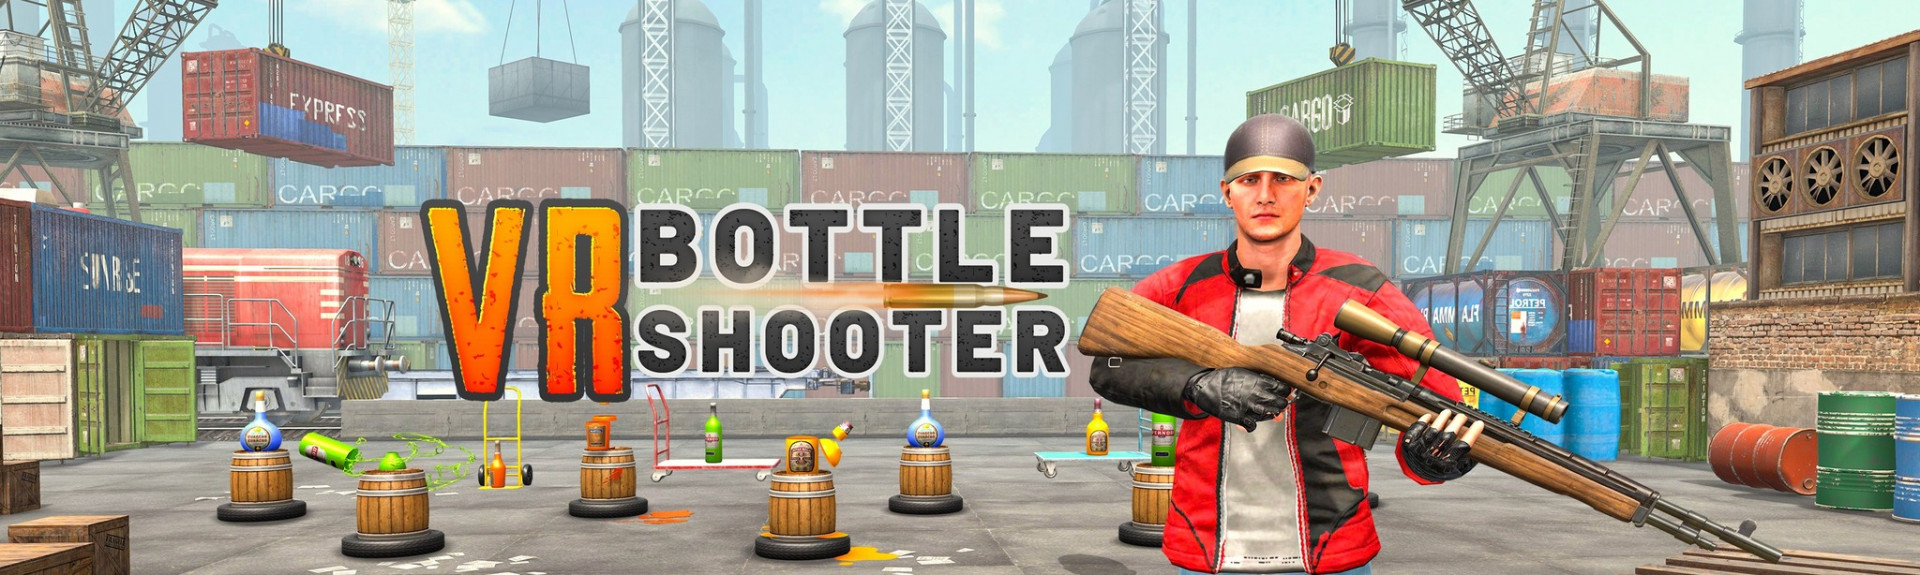 VR Bottle Shooter